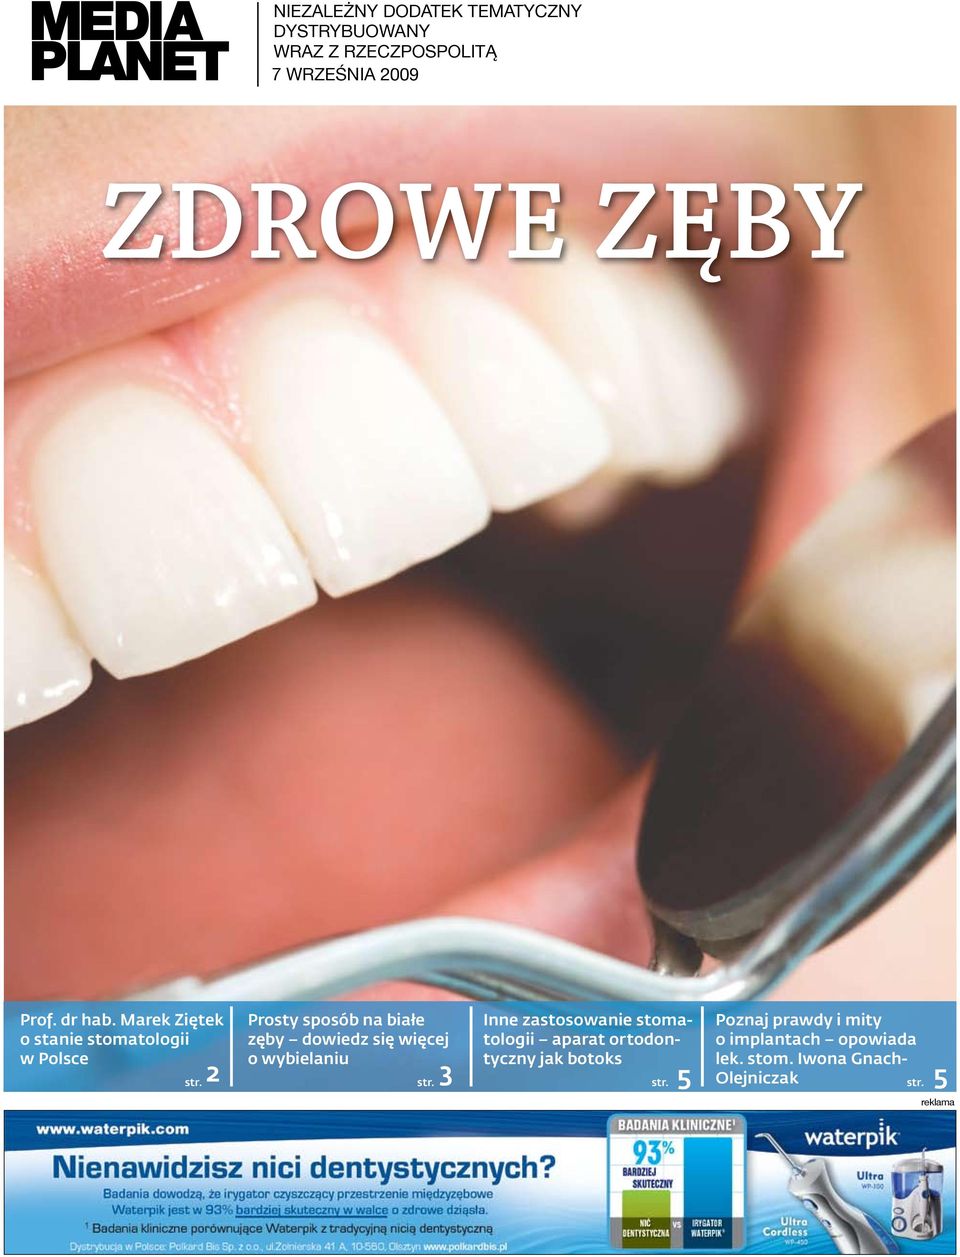 Marek Ziętek o stanie stomatologii w Polsce Prosty sposób na białe zęby dowiedz się więcej o